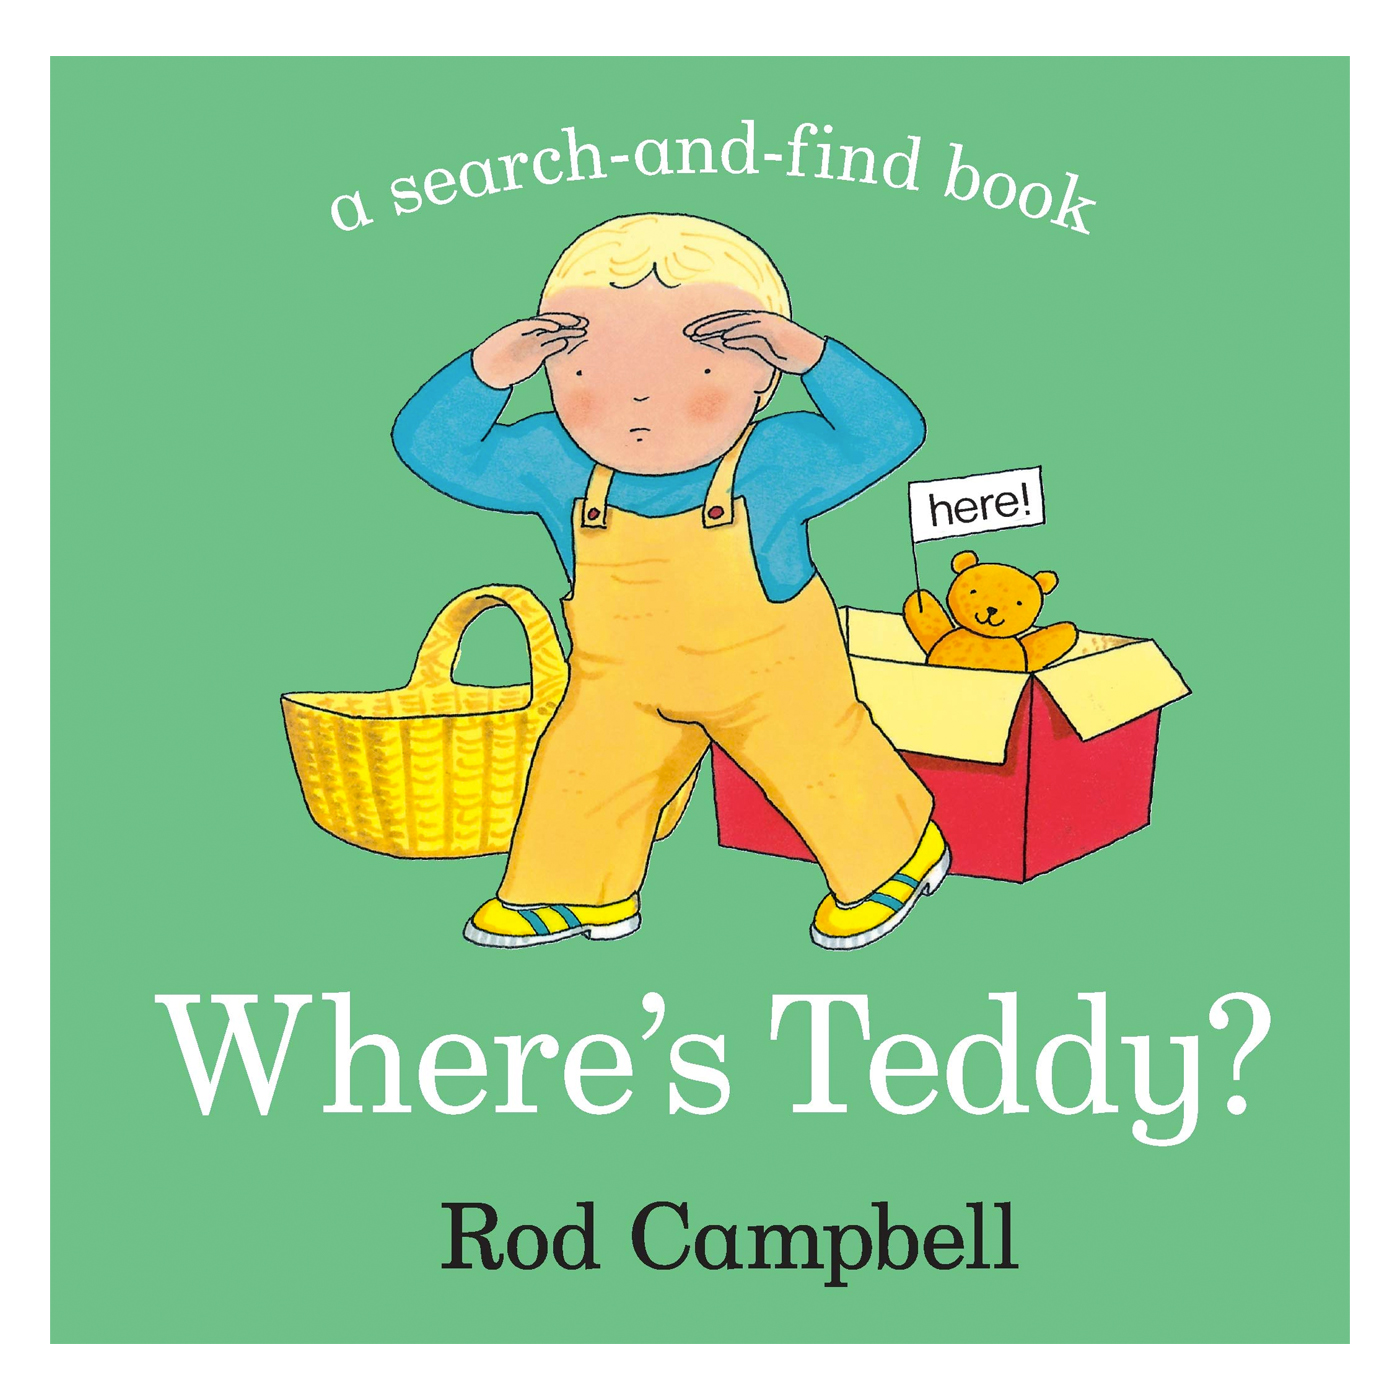  Where's Teddy?